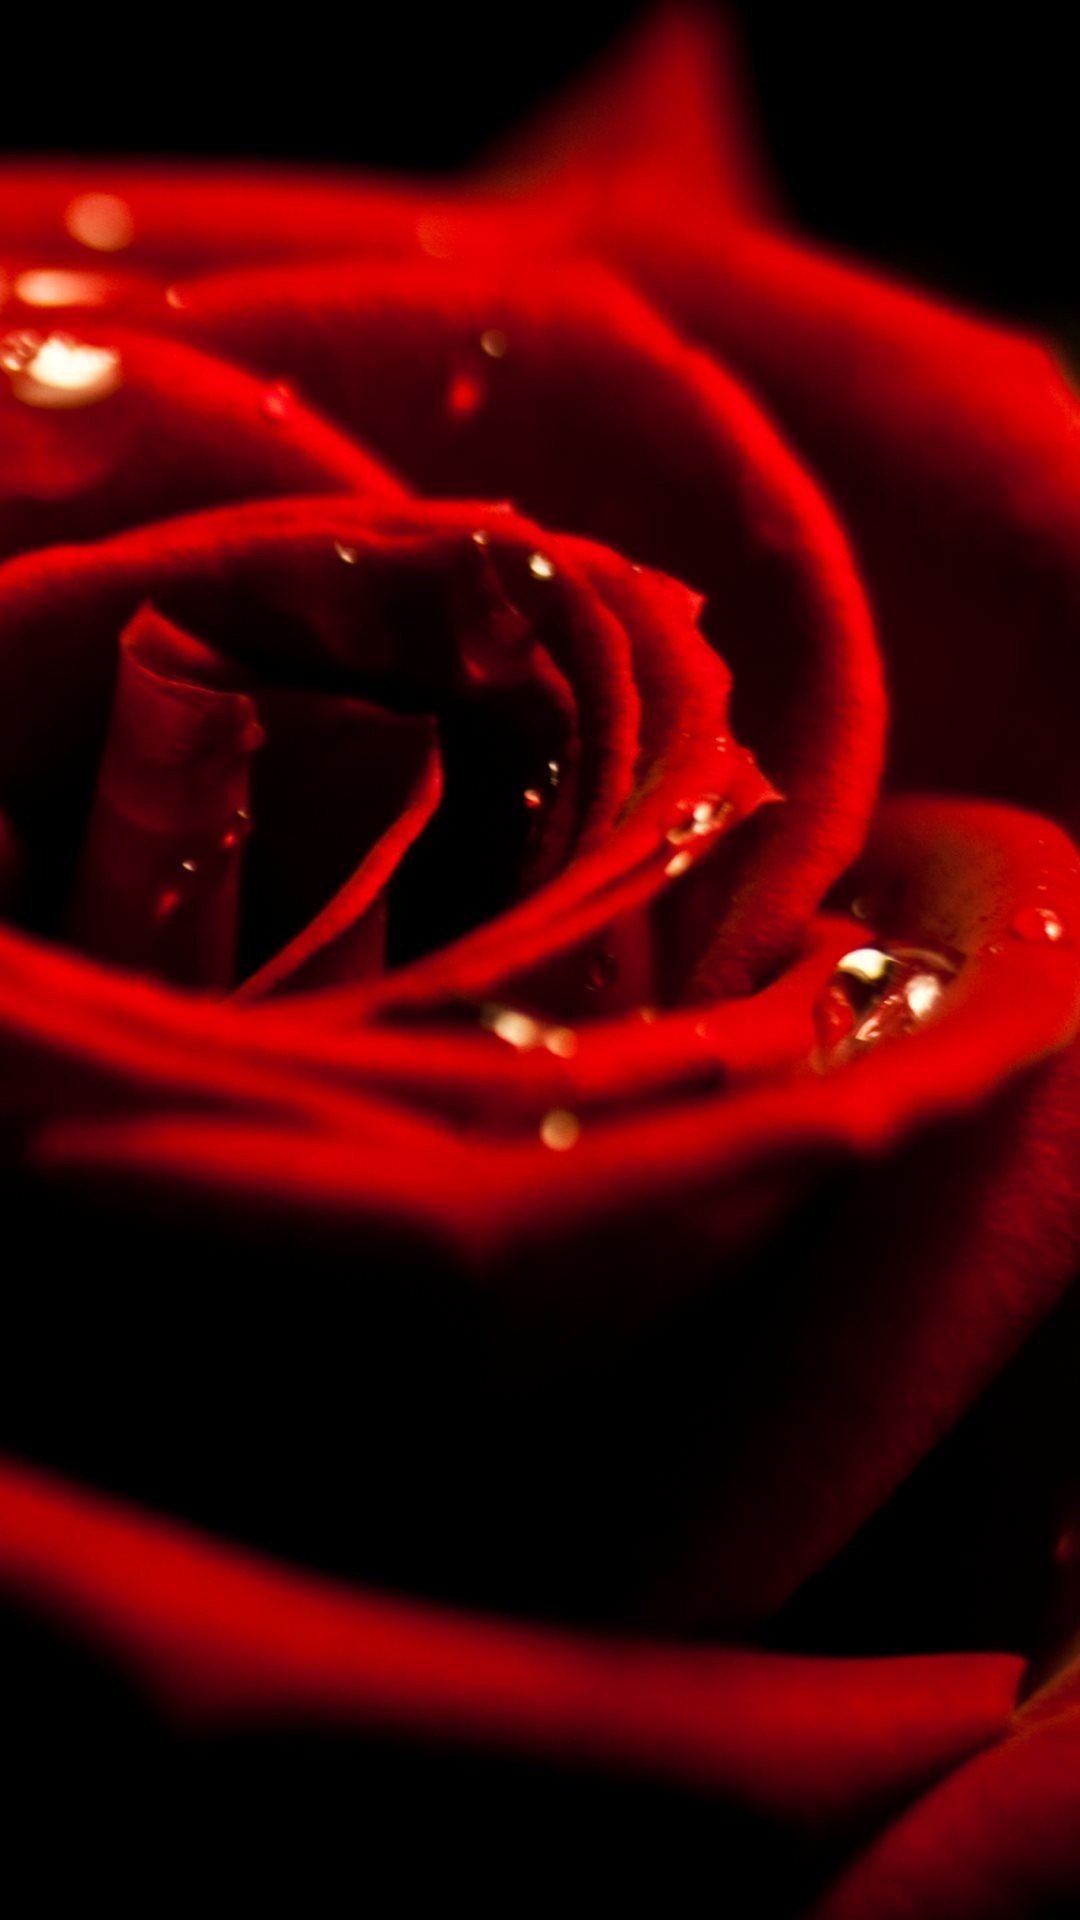 Red Rose Dew Closeup iPhone 6 Plus HD Wallpaper